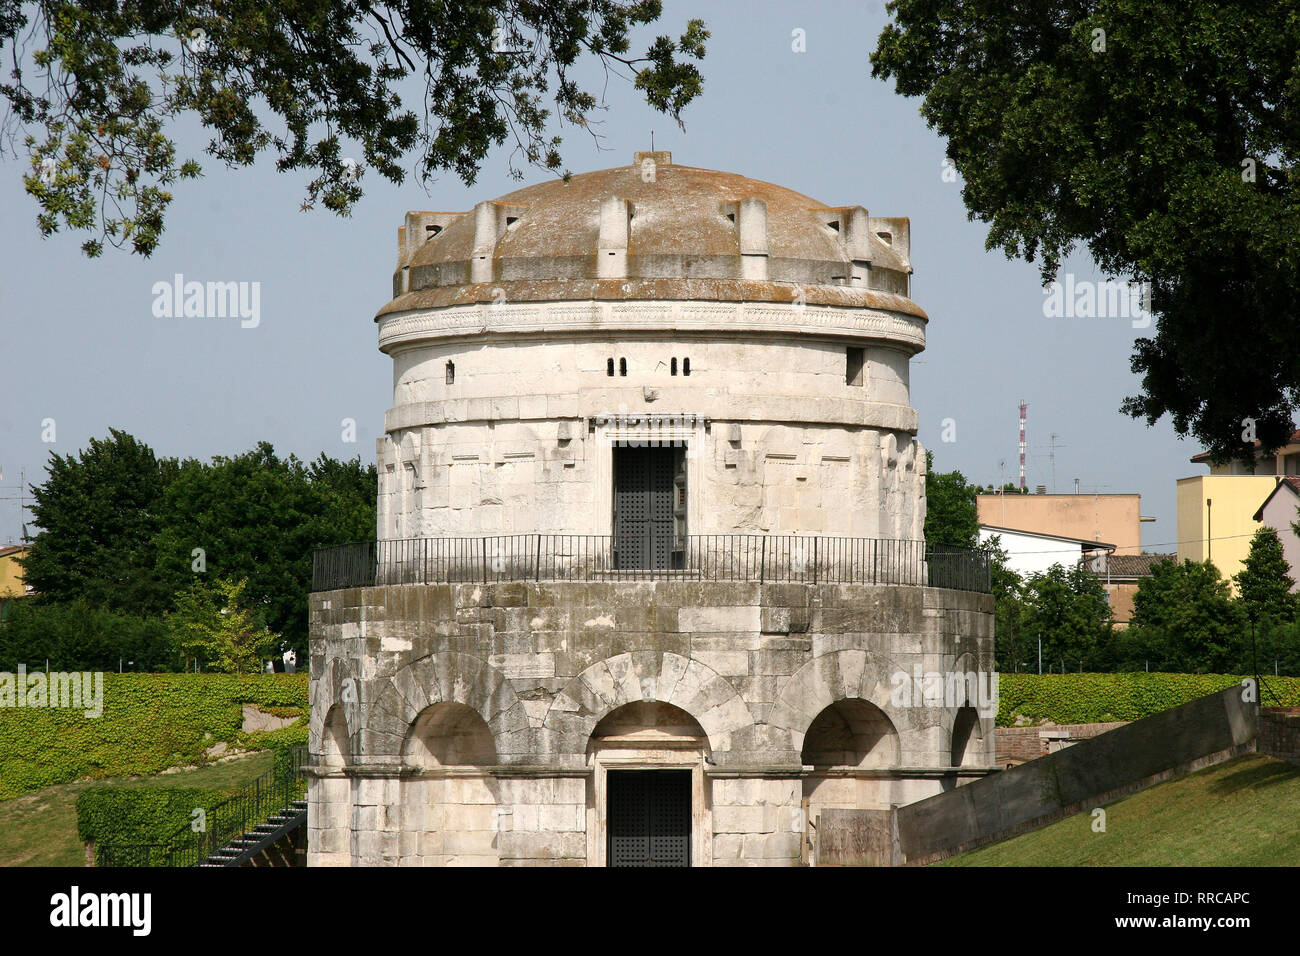 Italien. Ravenna. Mausoleum von Theoderic, König der Ostgoten. In 520 AD gebaut. Emilia-Romagna. Stockfoto